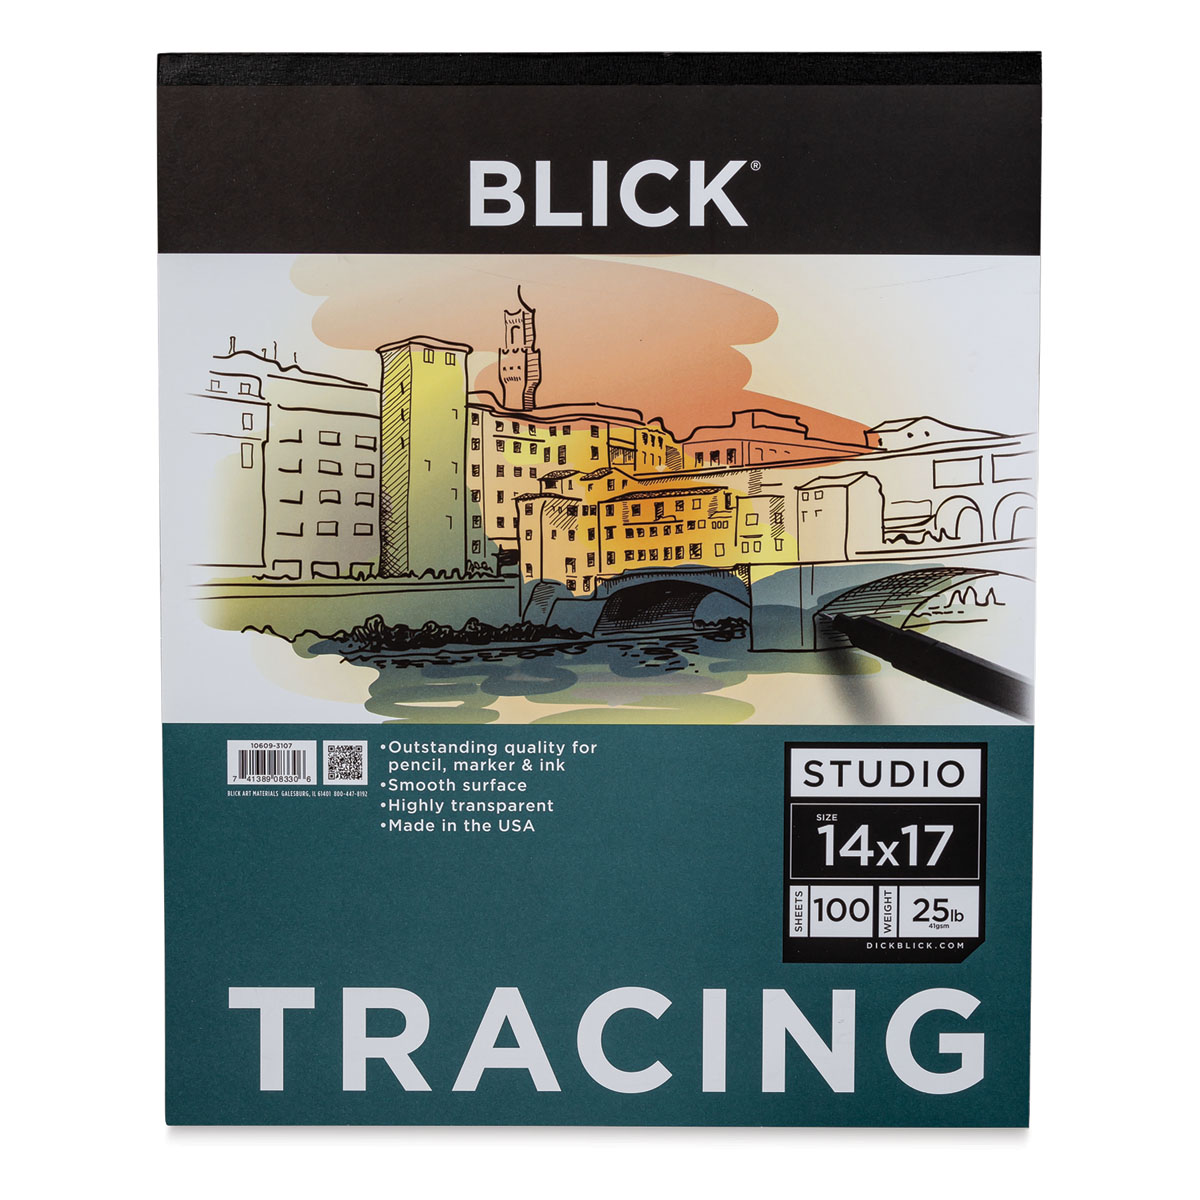 Blick Studio Tracing Paper Pad - 14 x 17, 100 Sheets